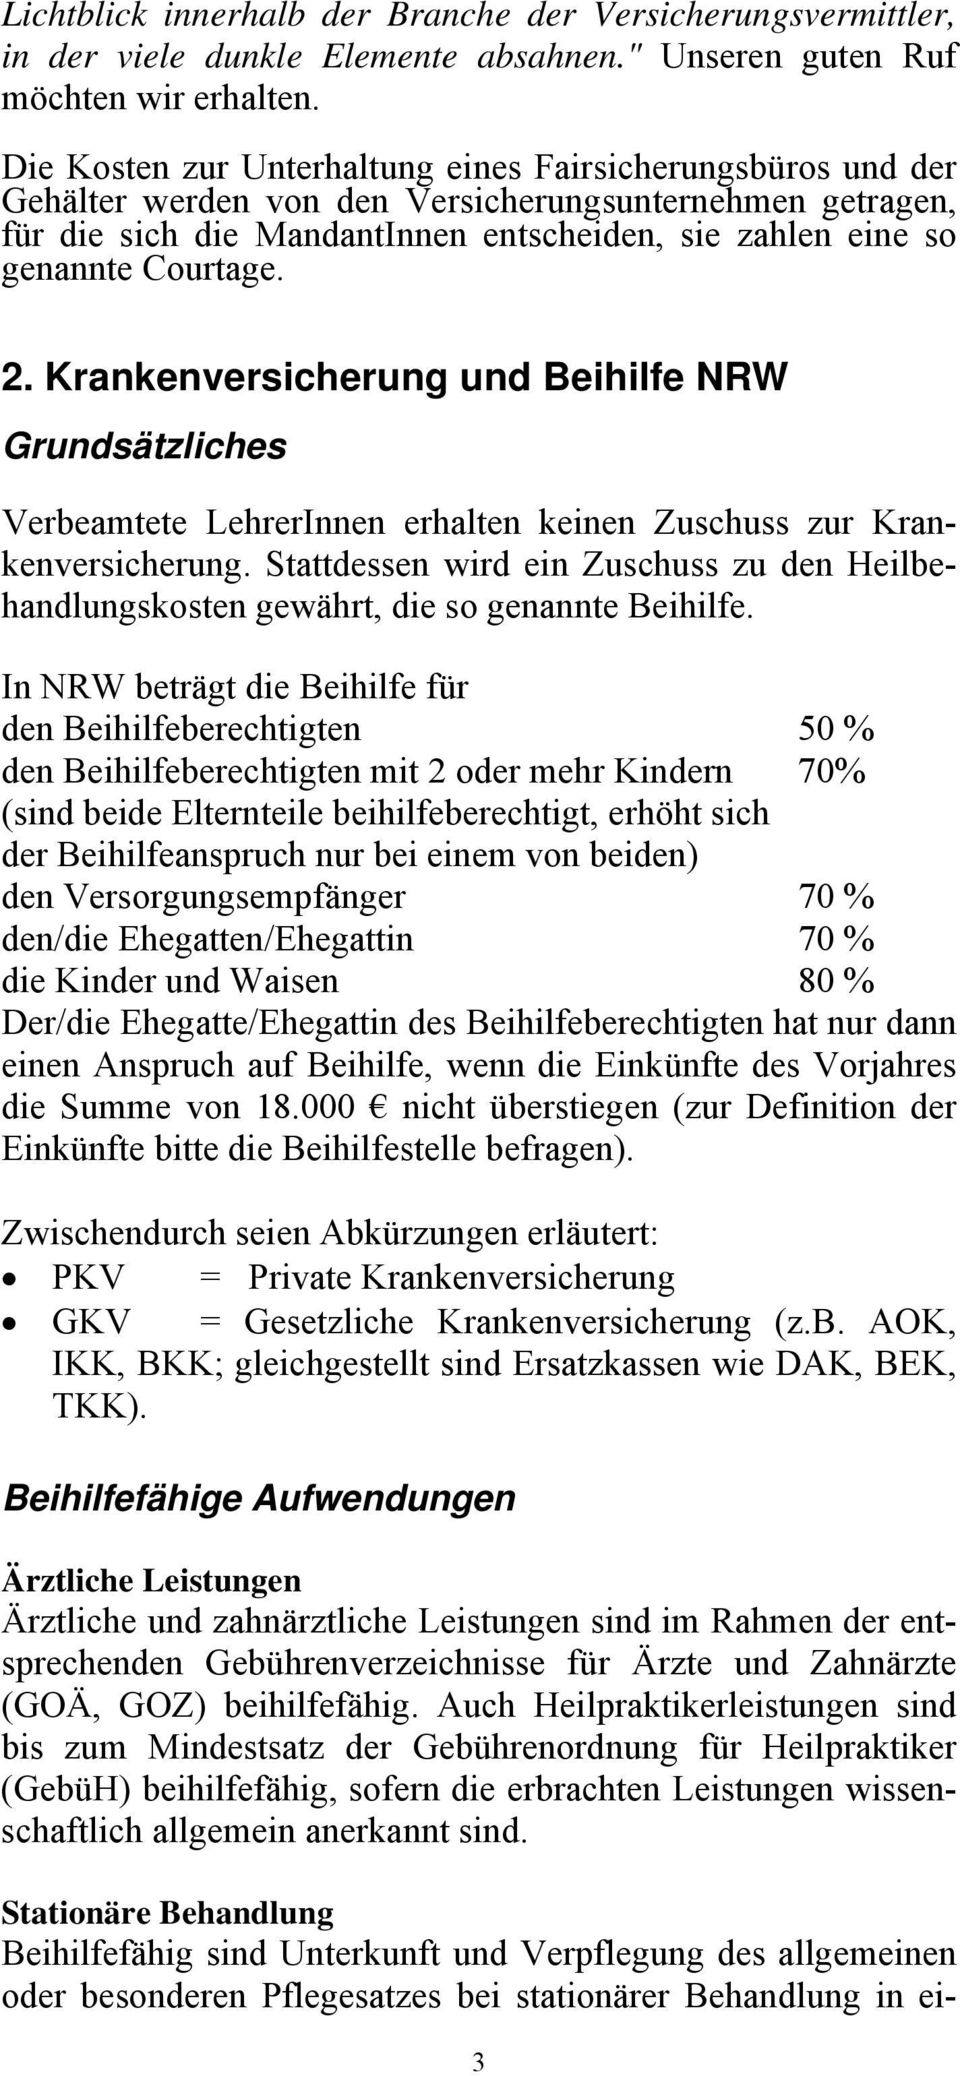 Courtage. 2. Krankenversicherung und Beihilfe NRW Grundsätzliches Verbeamtete LehrerInnen erhalten keinen Zuschuss zur Krankenversicherung.